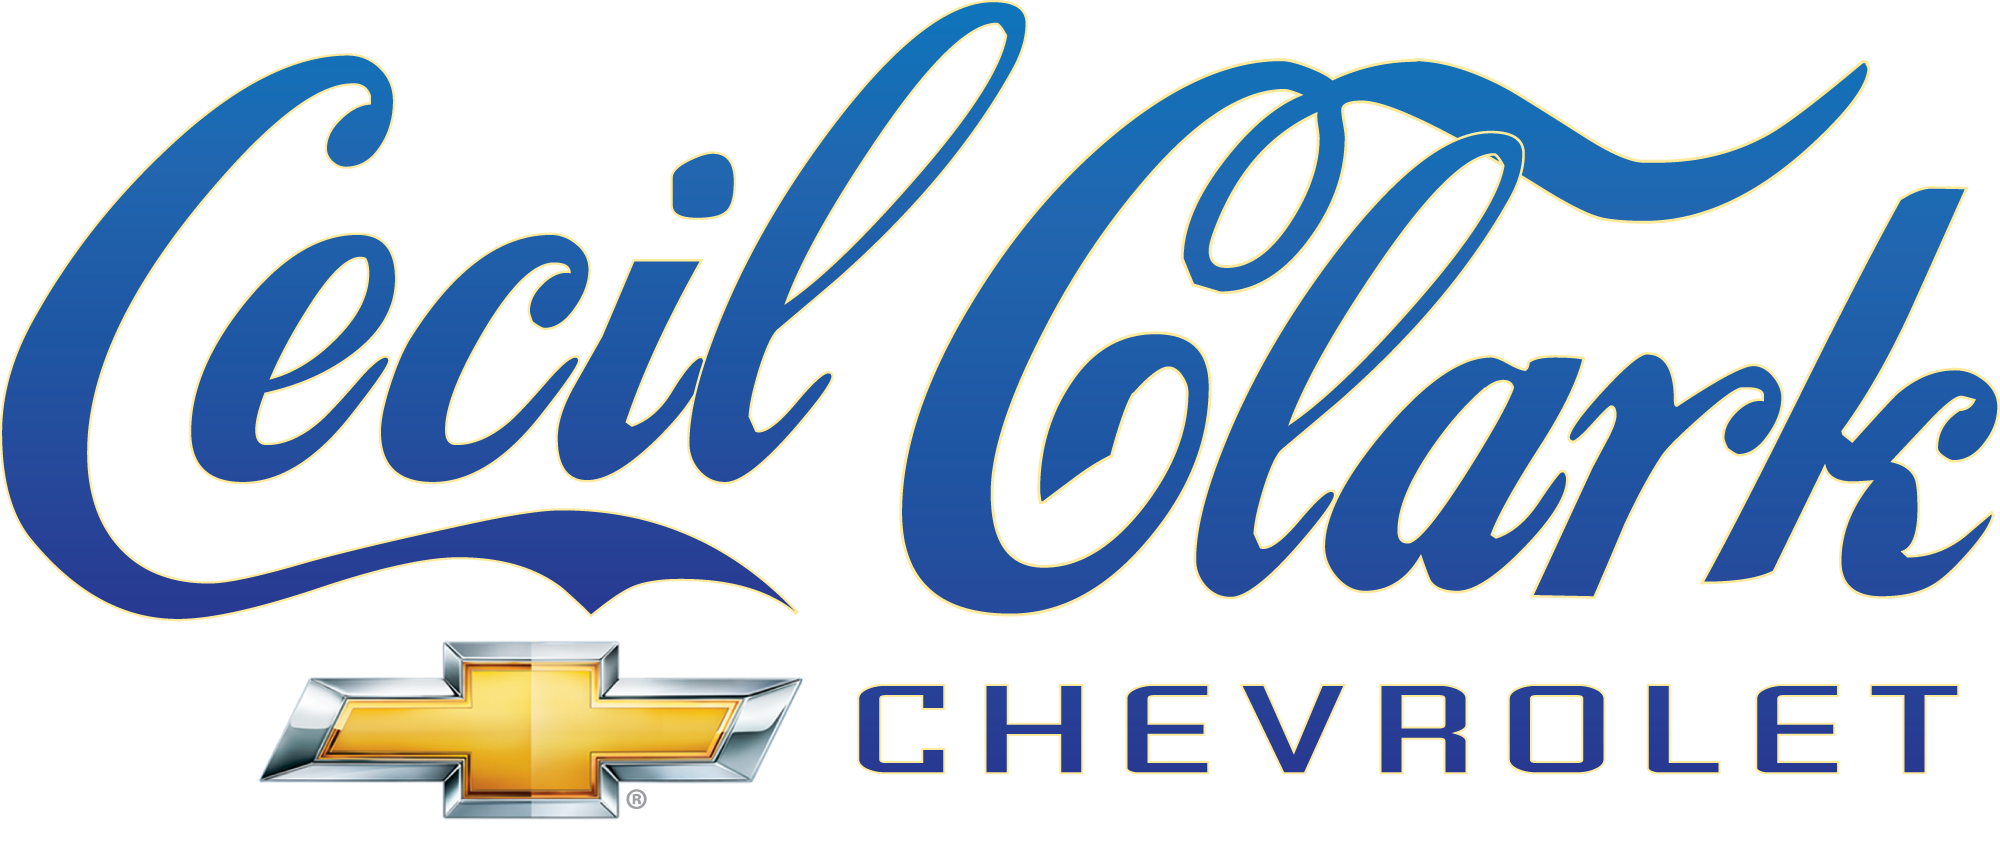 Cecil Clark Chevrolet 